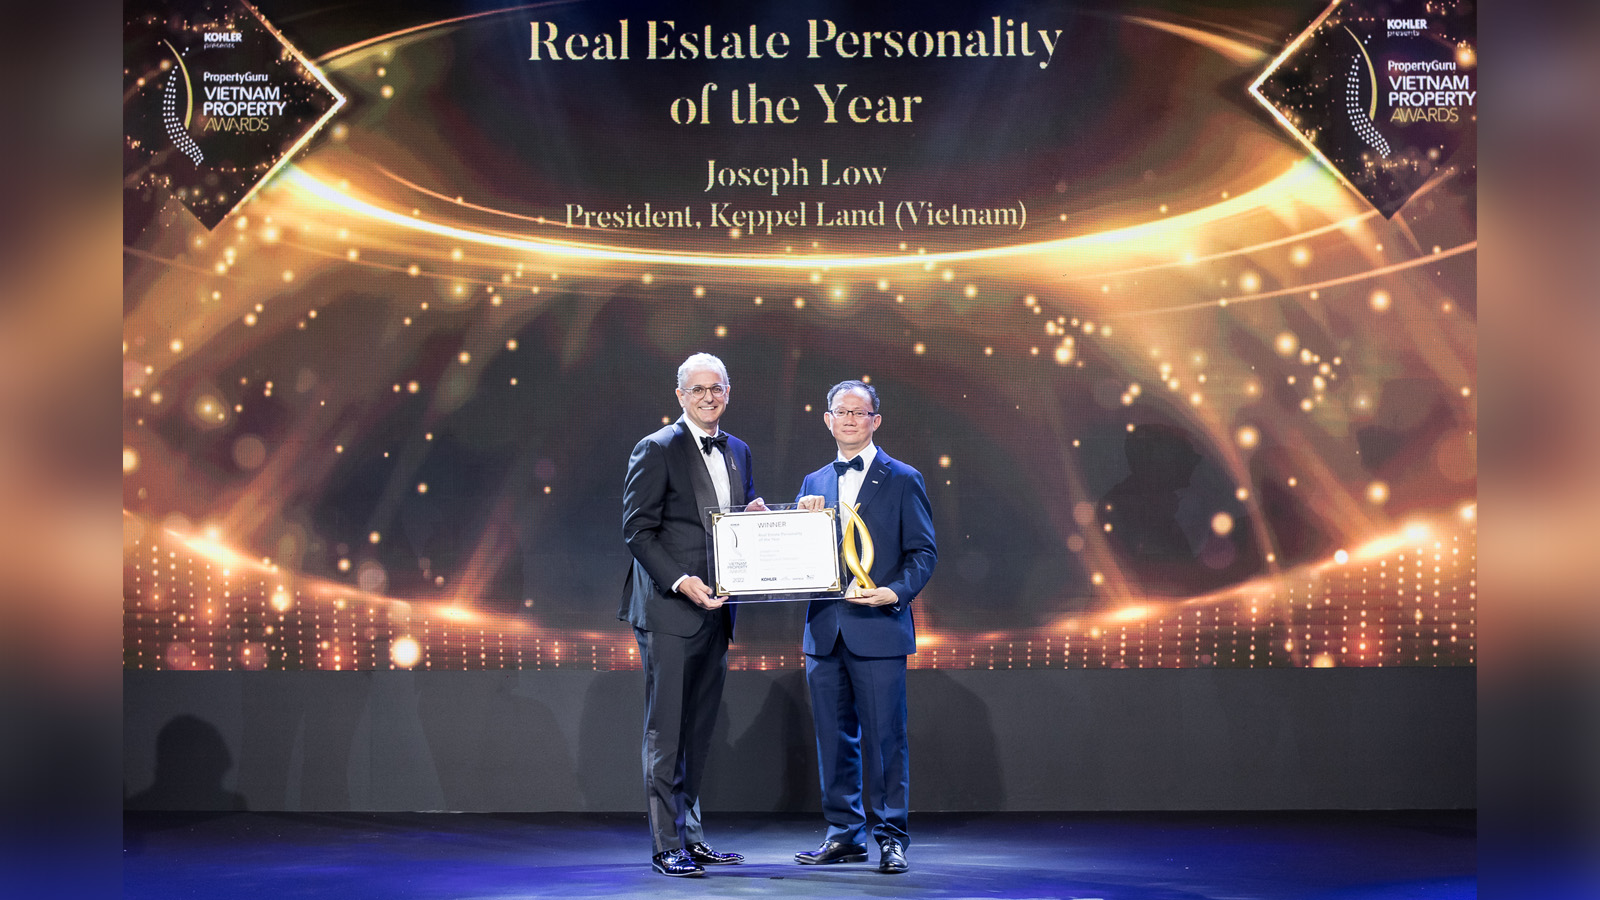 Giải thưởng Bất động sản PropertyGuru Việt Nam 2022 – Joseph Low